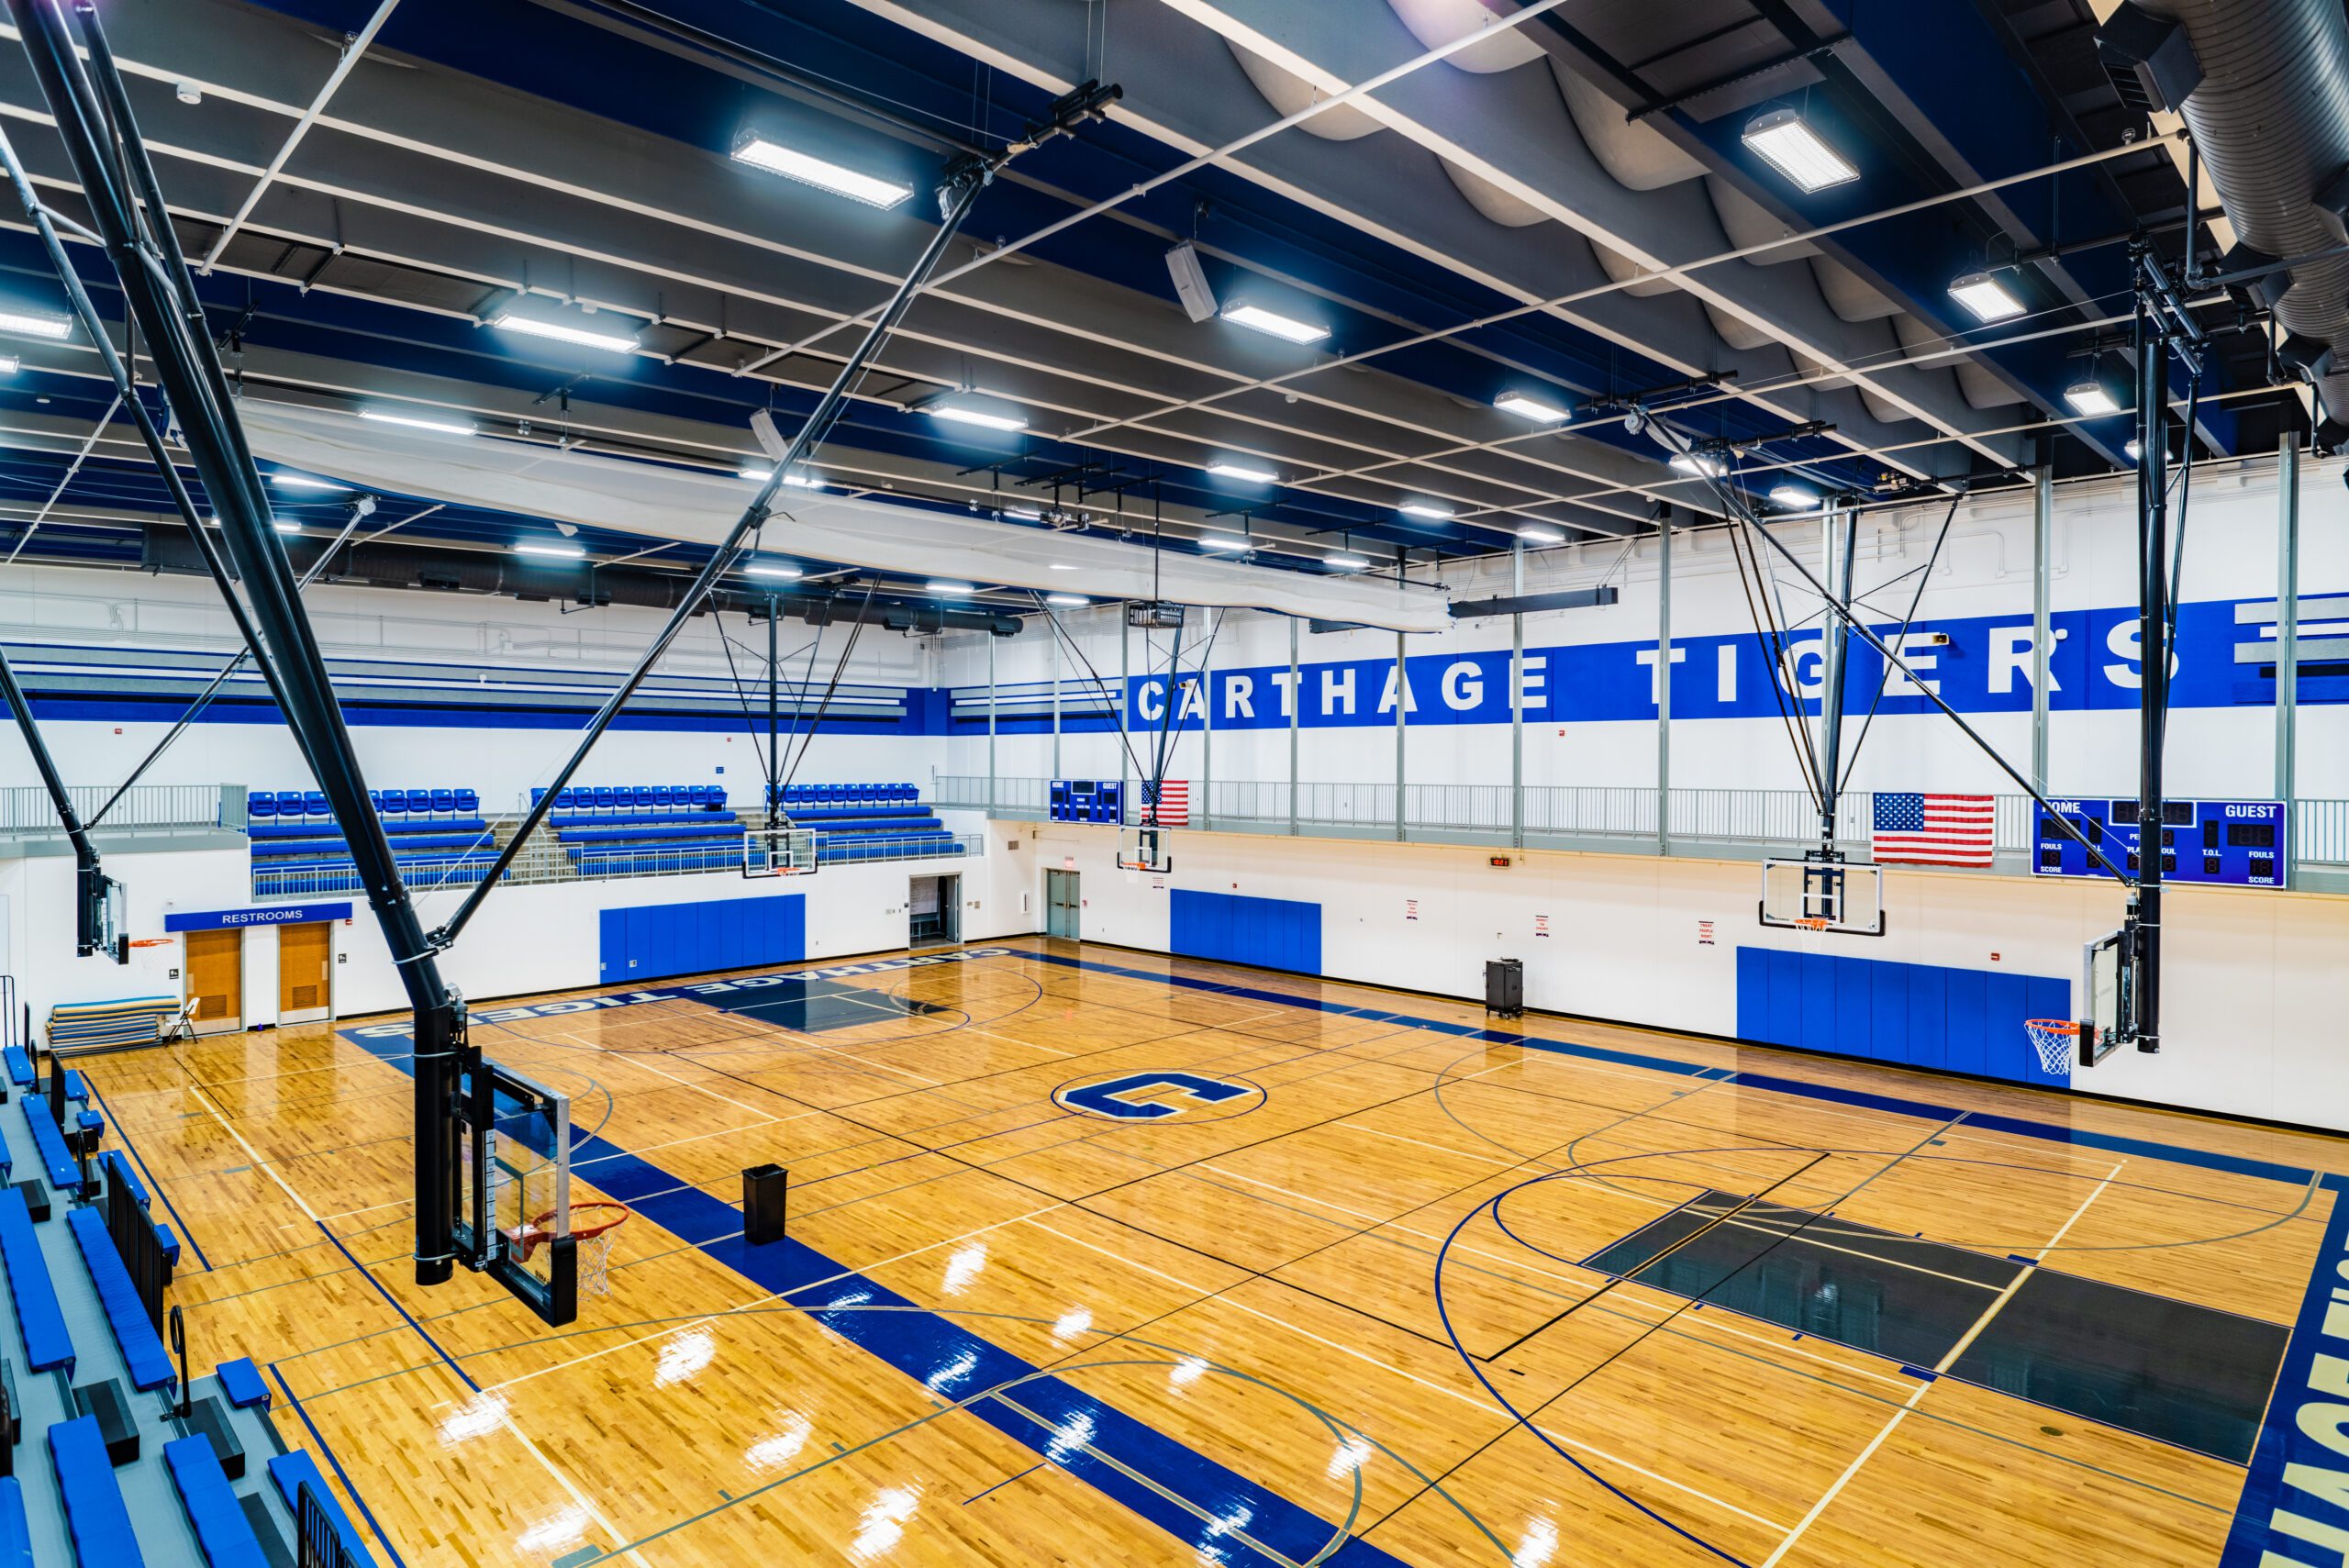 Interior of Carthage Junior High gym.